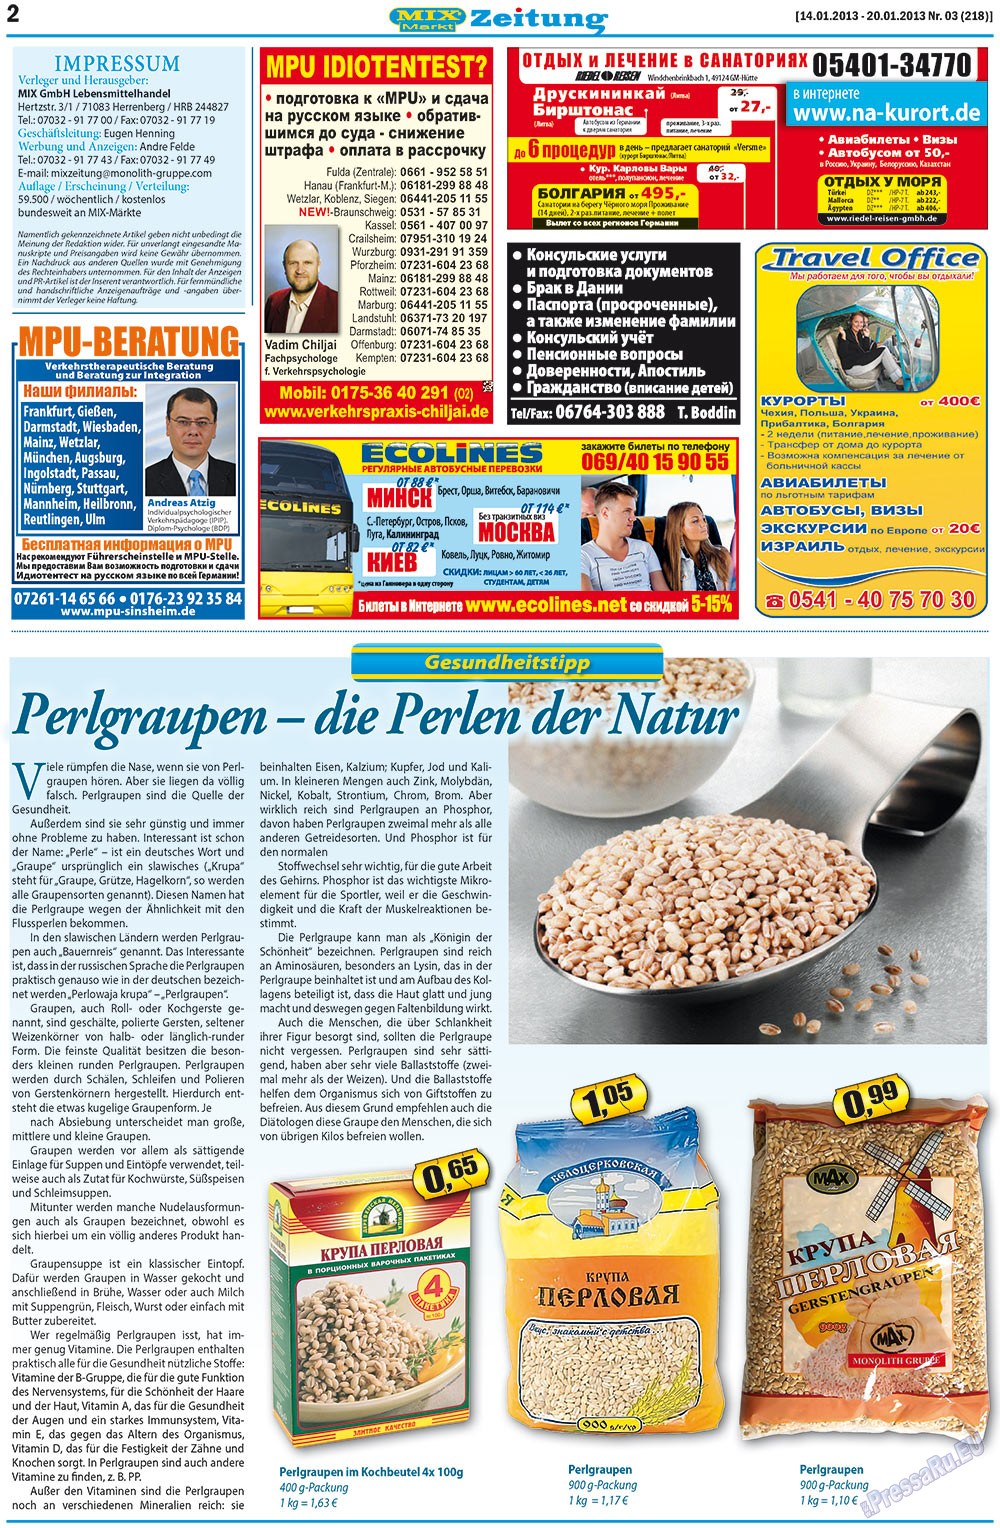 MIX-Markt Zeitung, газета. 2013 №3 стр.2